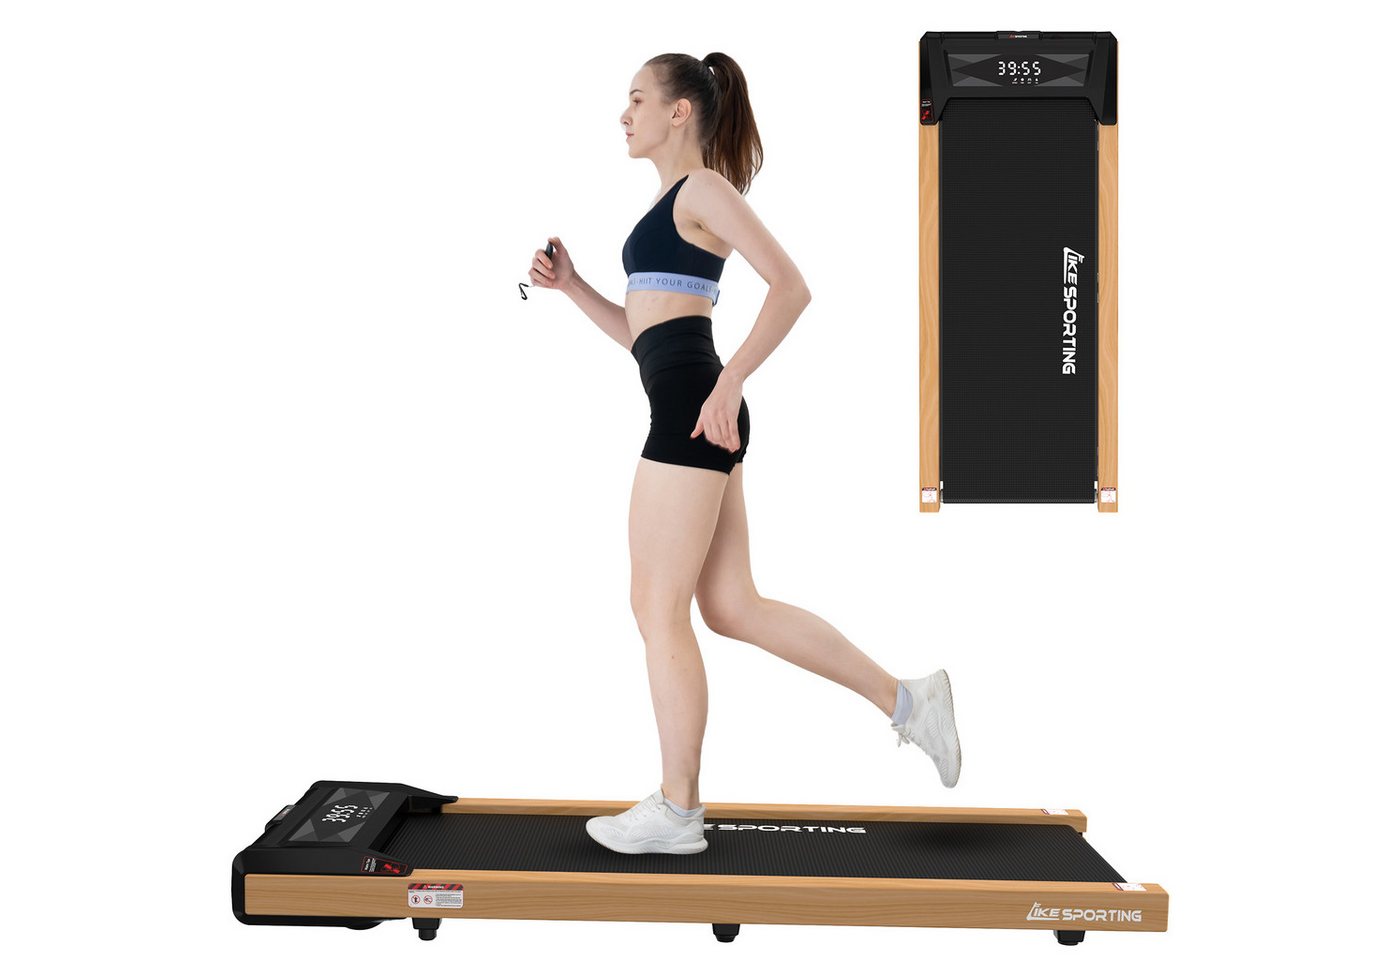 CITYSPORTS Laufband Likesporting 550W Treadmill mit Bluetooth für Zuhause und im Büro (Mit Schmiermittel, Toolkit), 1-6km/h Walking/jogging Pad mit LED-Anzeige und Fernbedienung von CITYSPORTS